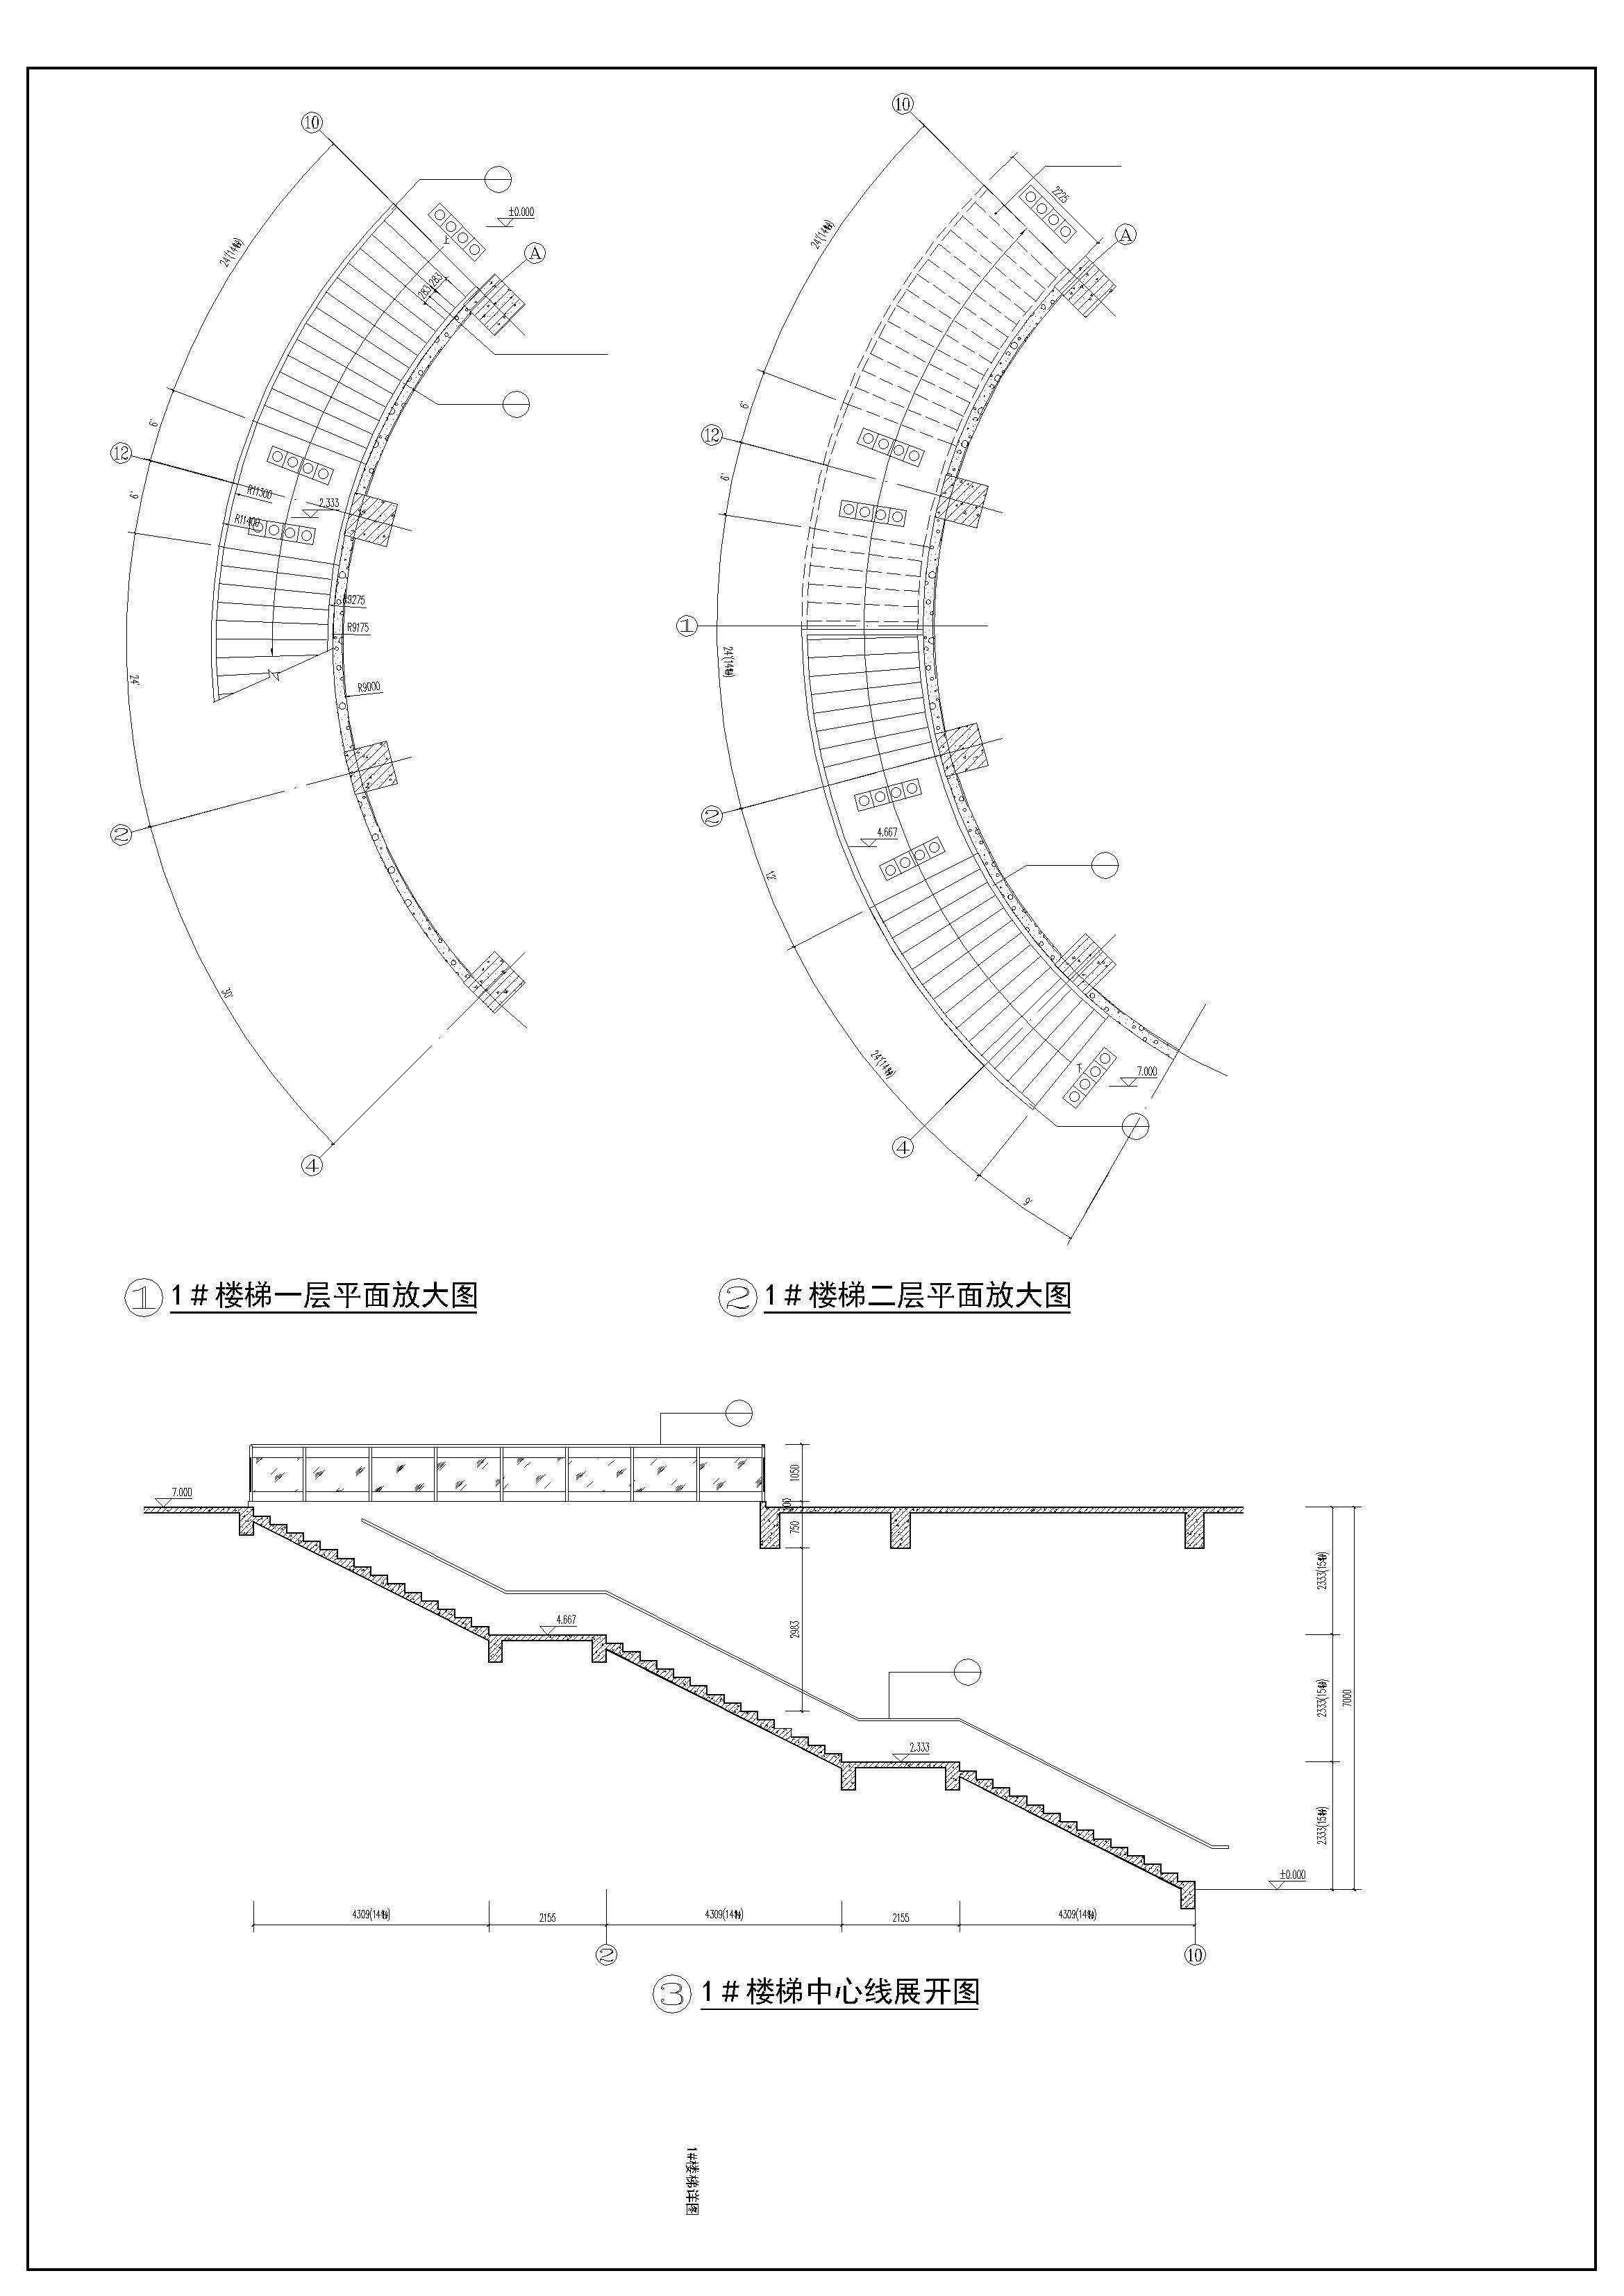 2层科技馆科学馆建筑设计施工图